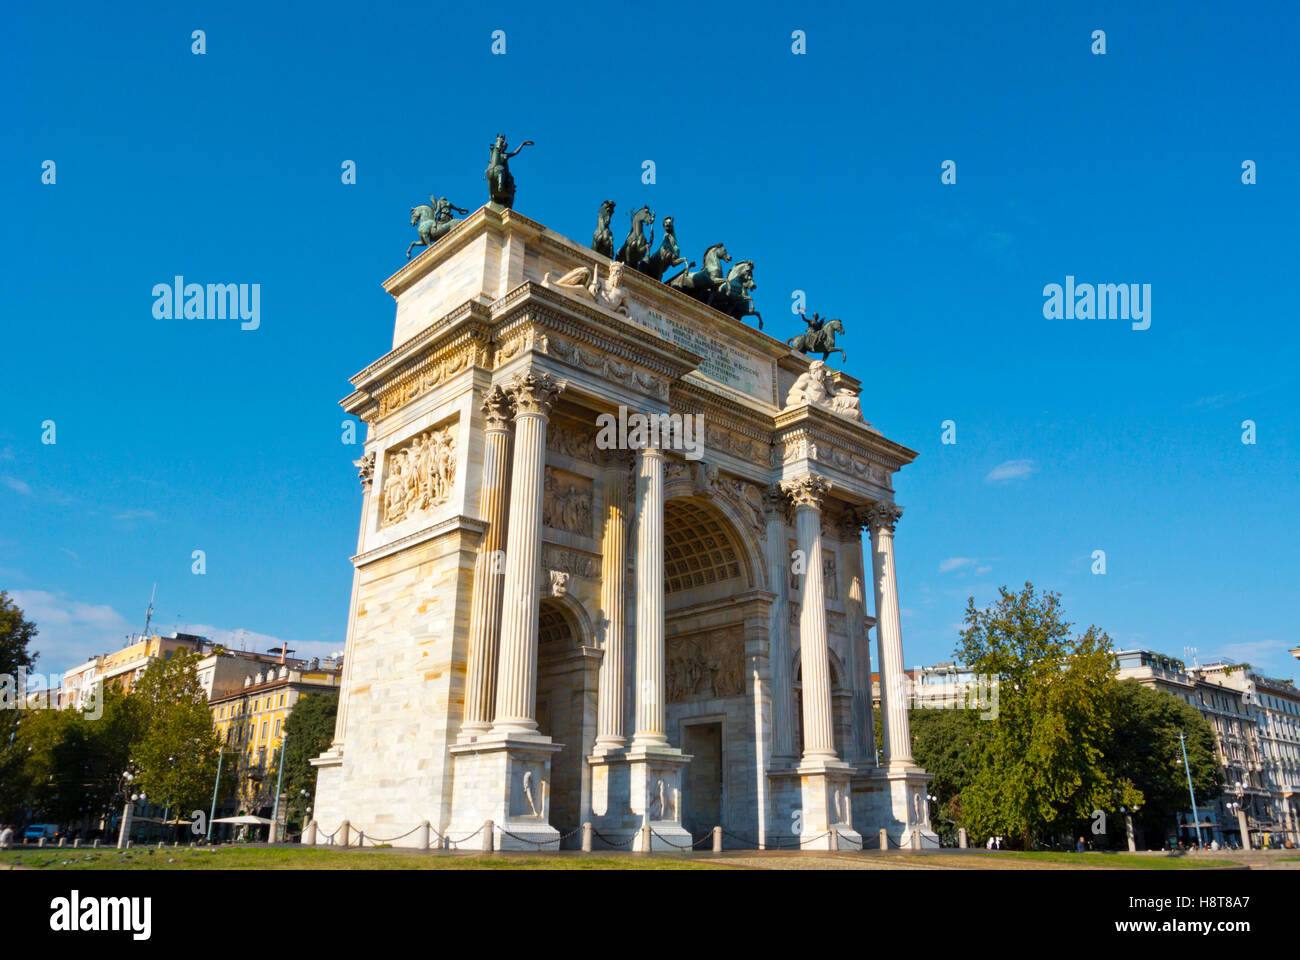 Arco della Pace, Piazza Sempione, Milan, Lombardy, Italy Stock Photo